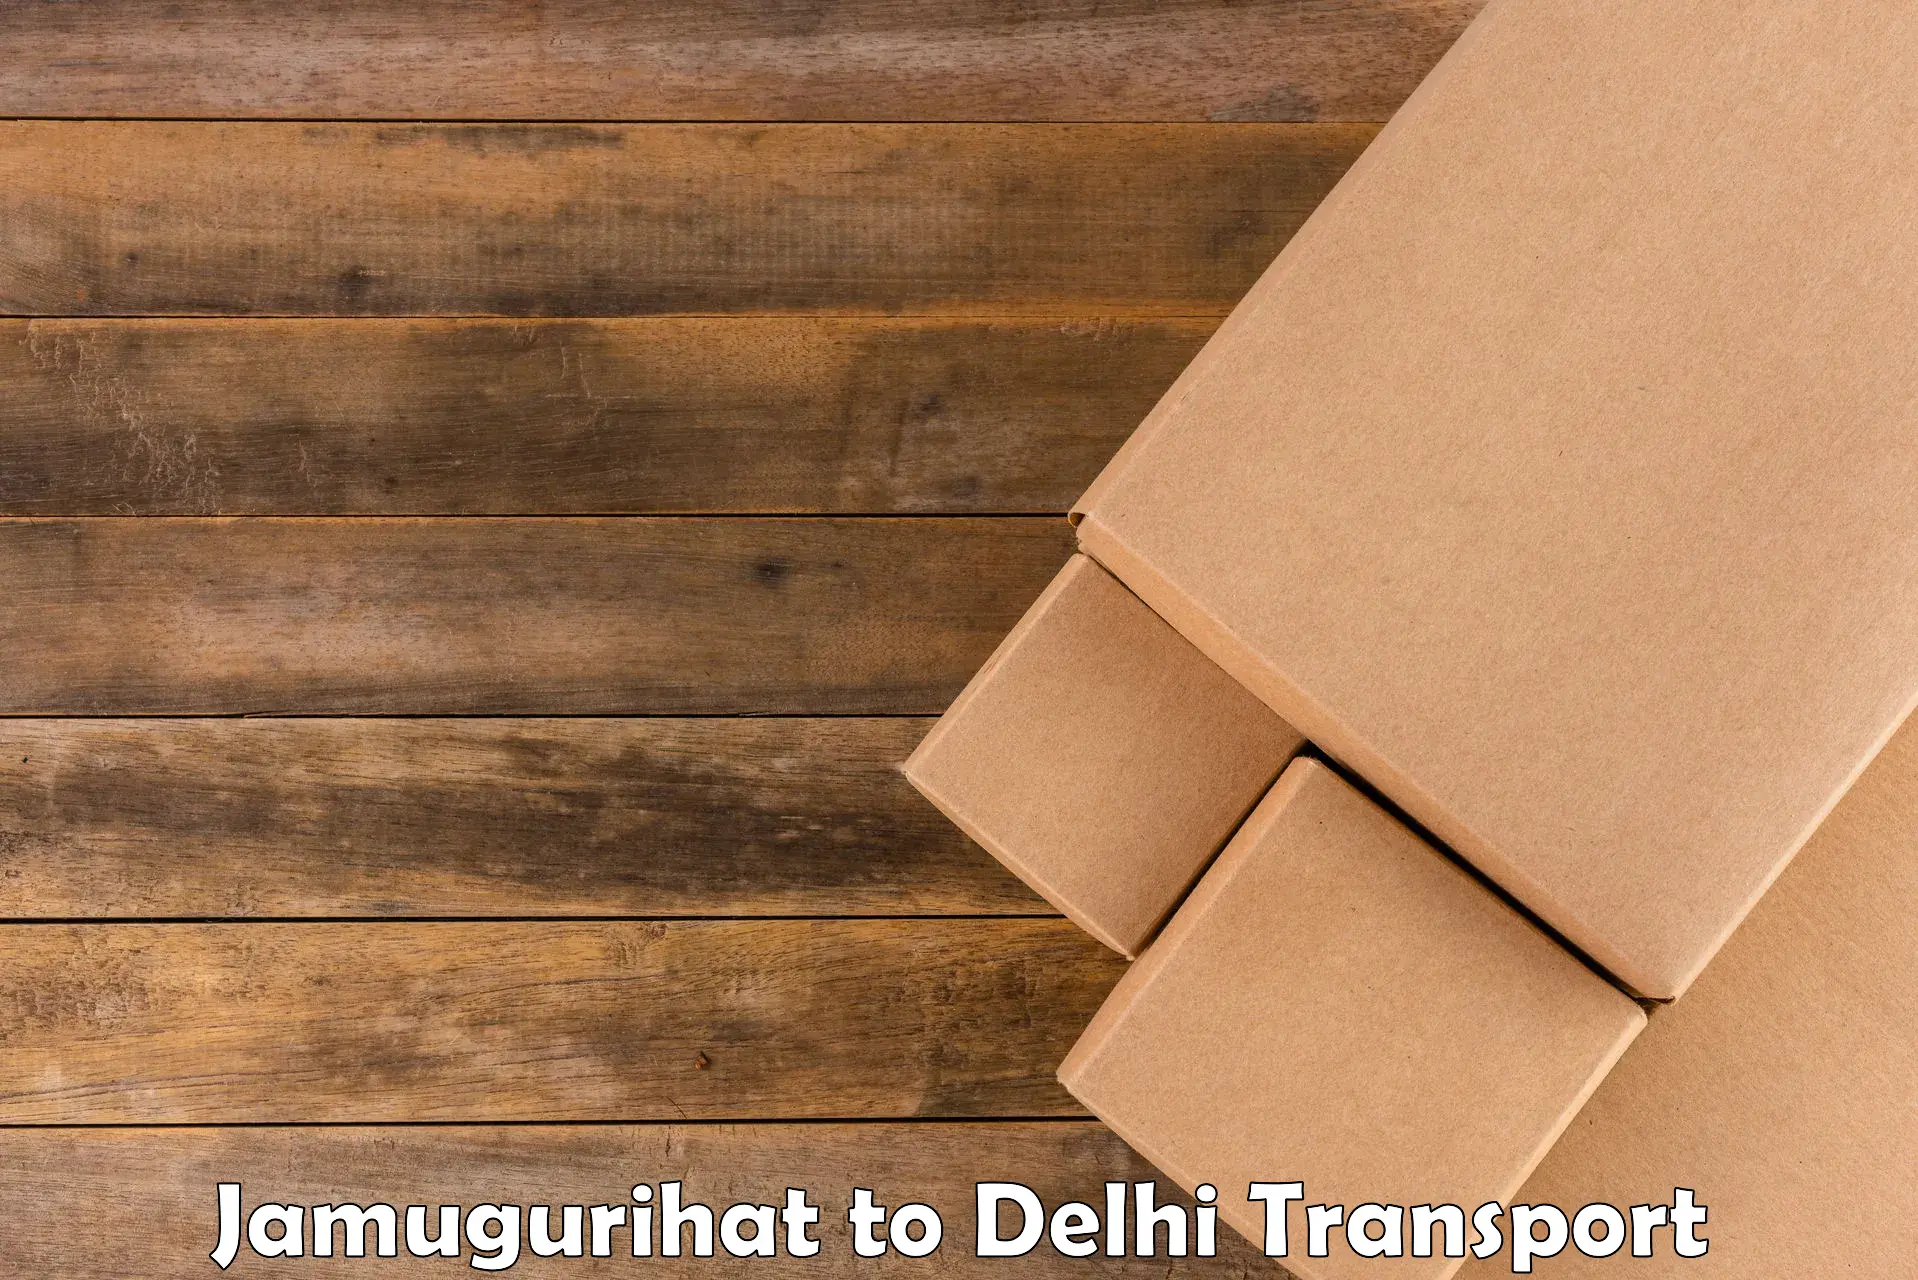 Commercial transport service Jamugurihat to East Delhi